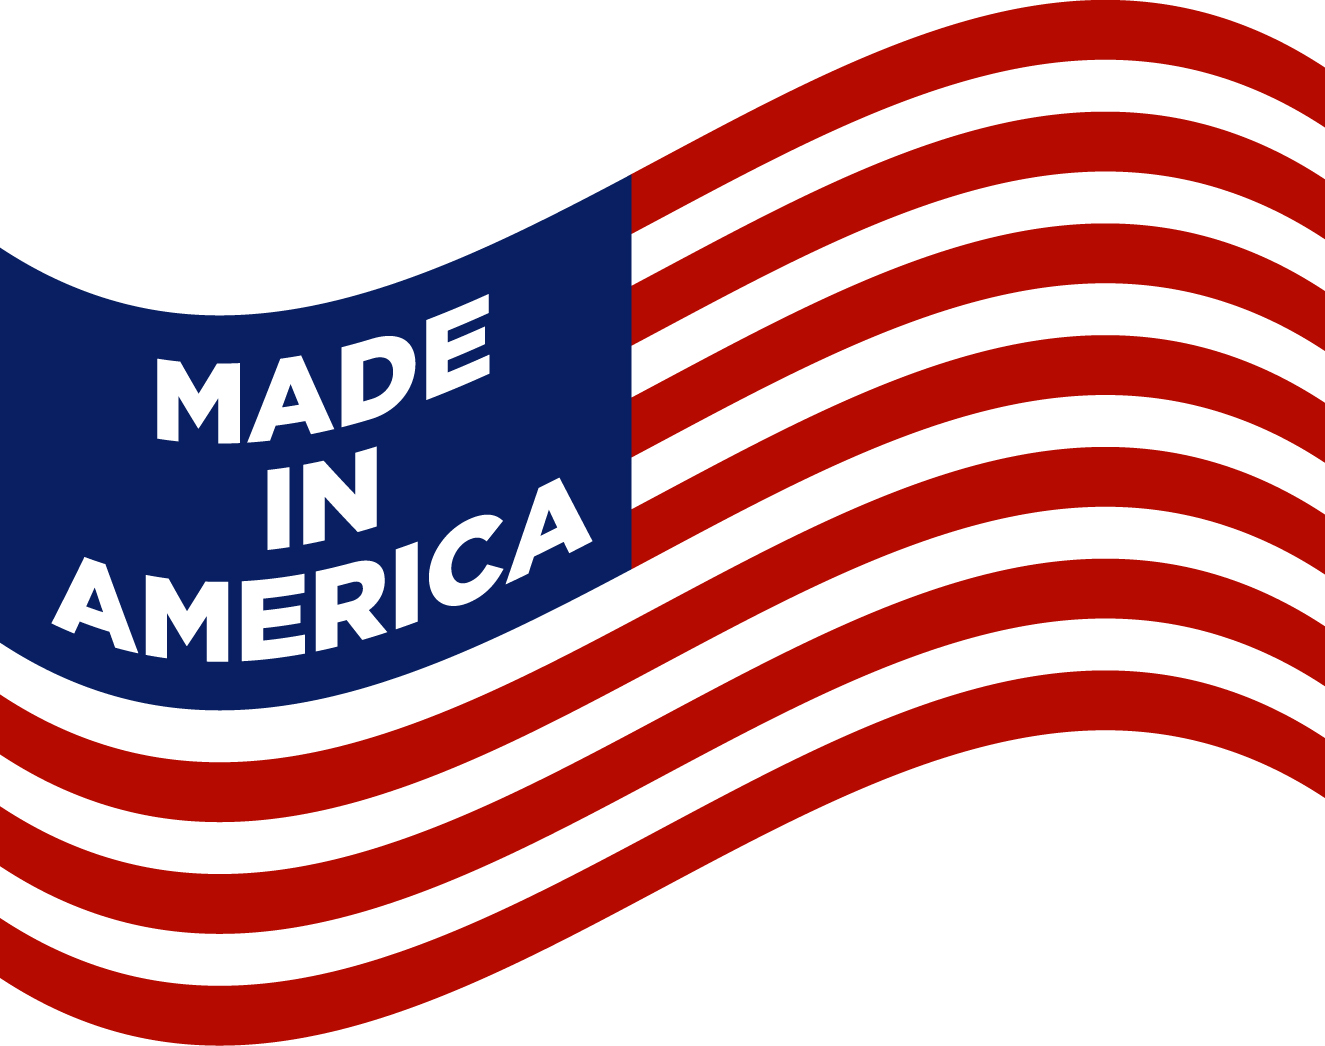 Made-USA